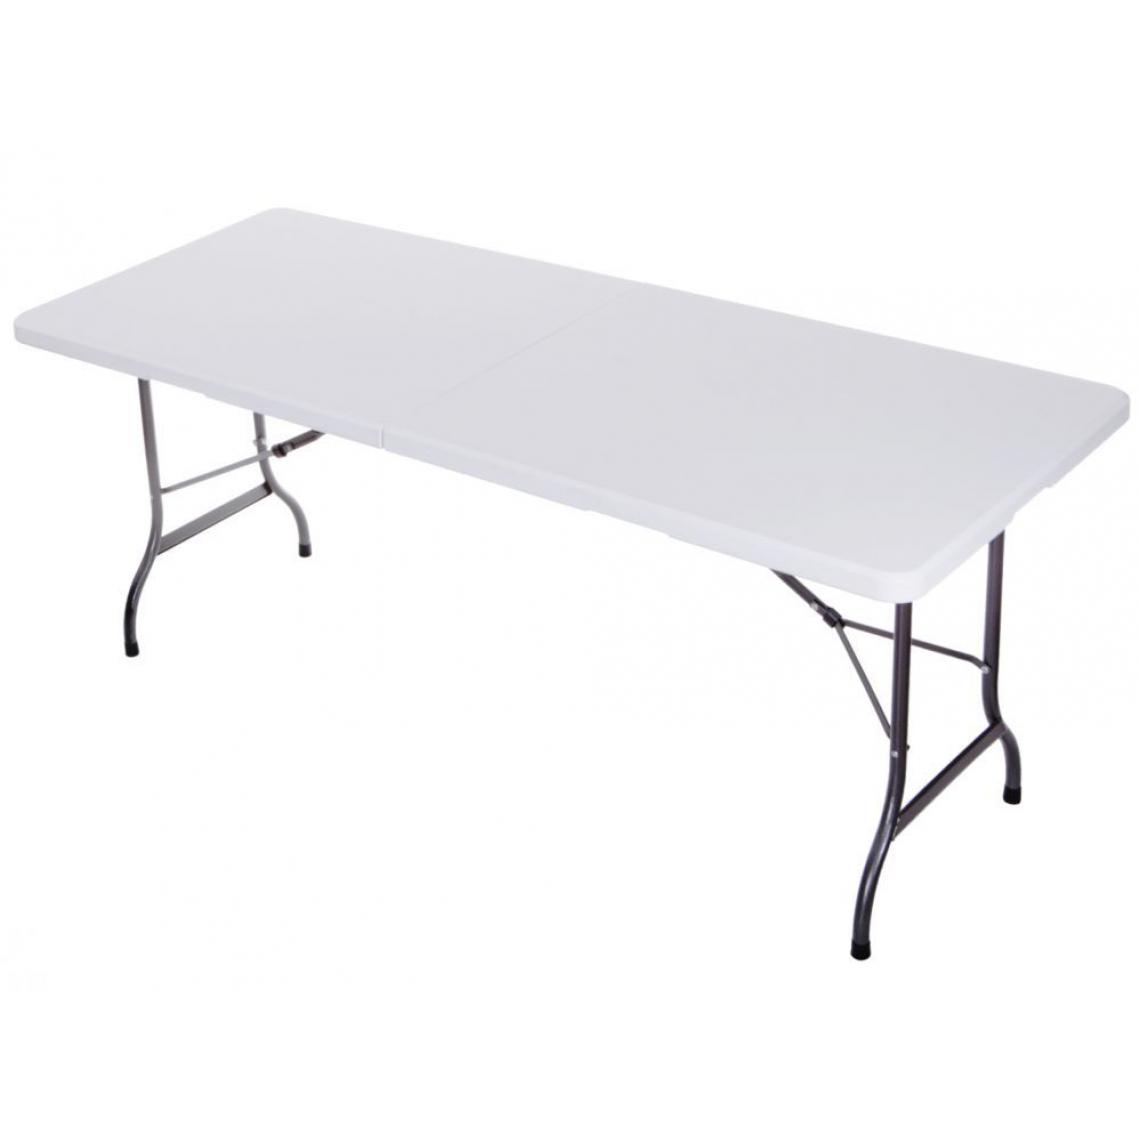 Hucoco - MSTORE | Table de banquet jardin pliable | 180x72x70 cm | Construction robuste en acier | Montage rapide et facile - Blanc - Tables de jardin